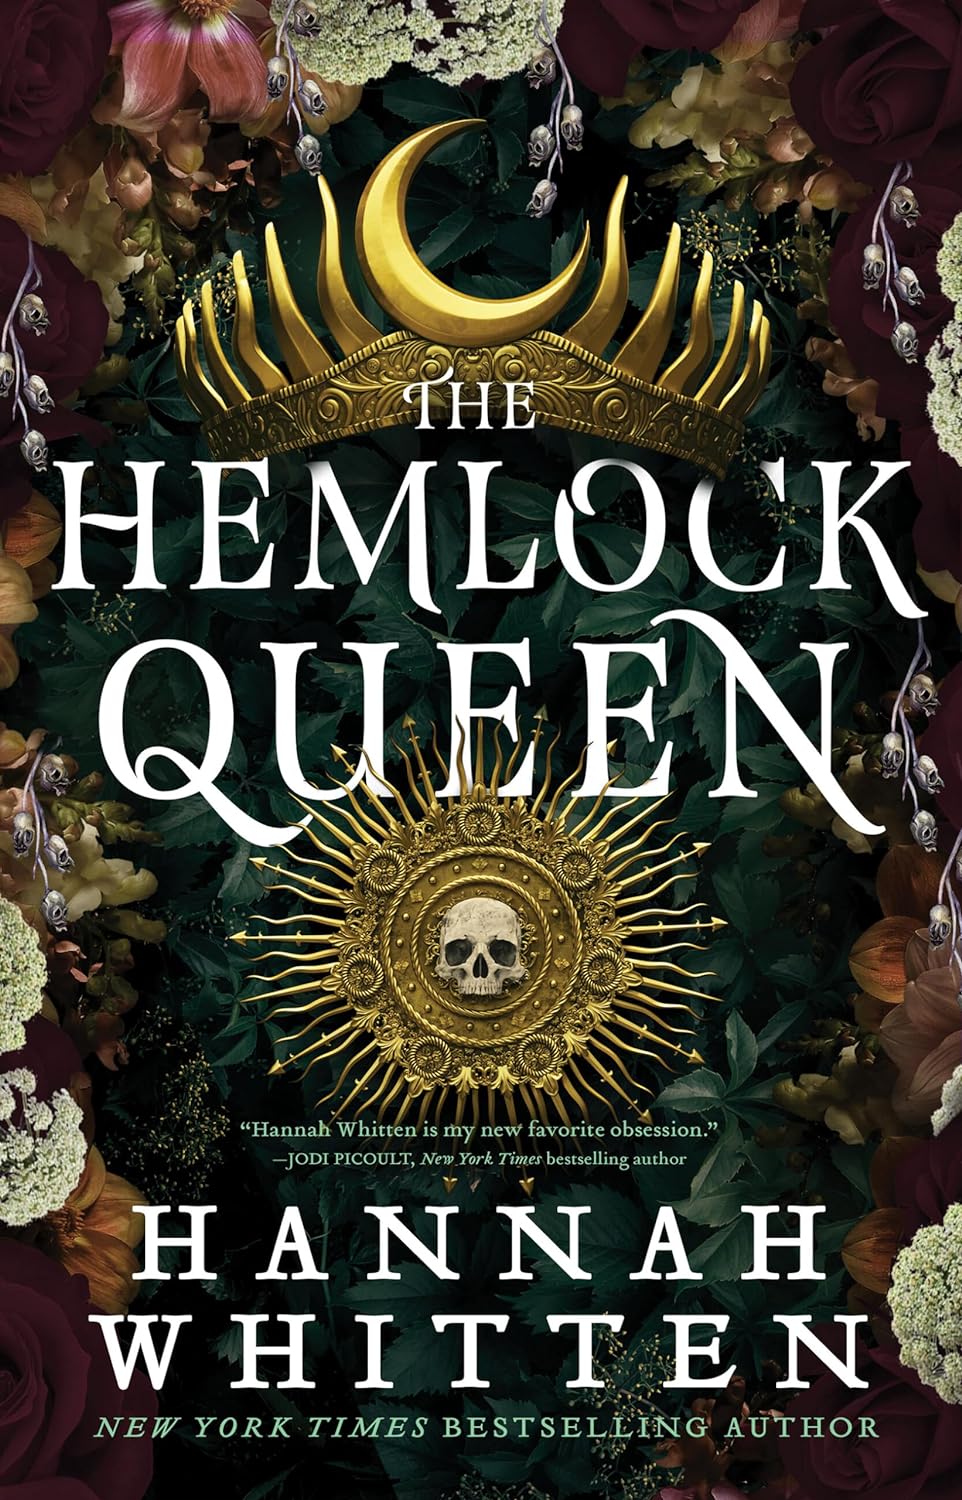 Image for "The Hemlock Queen"